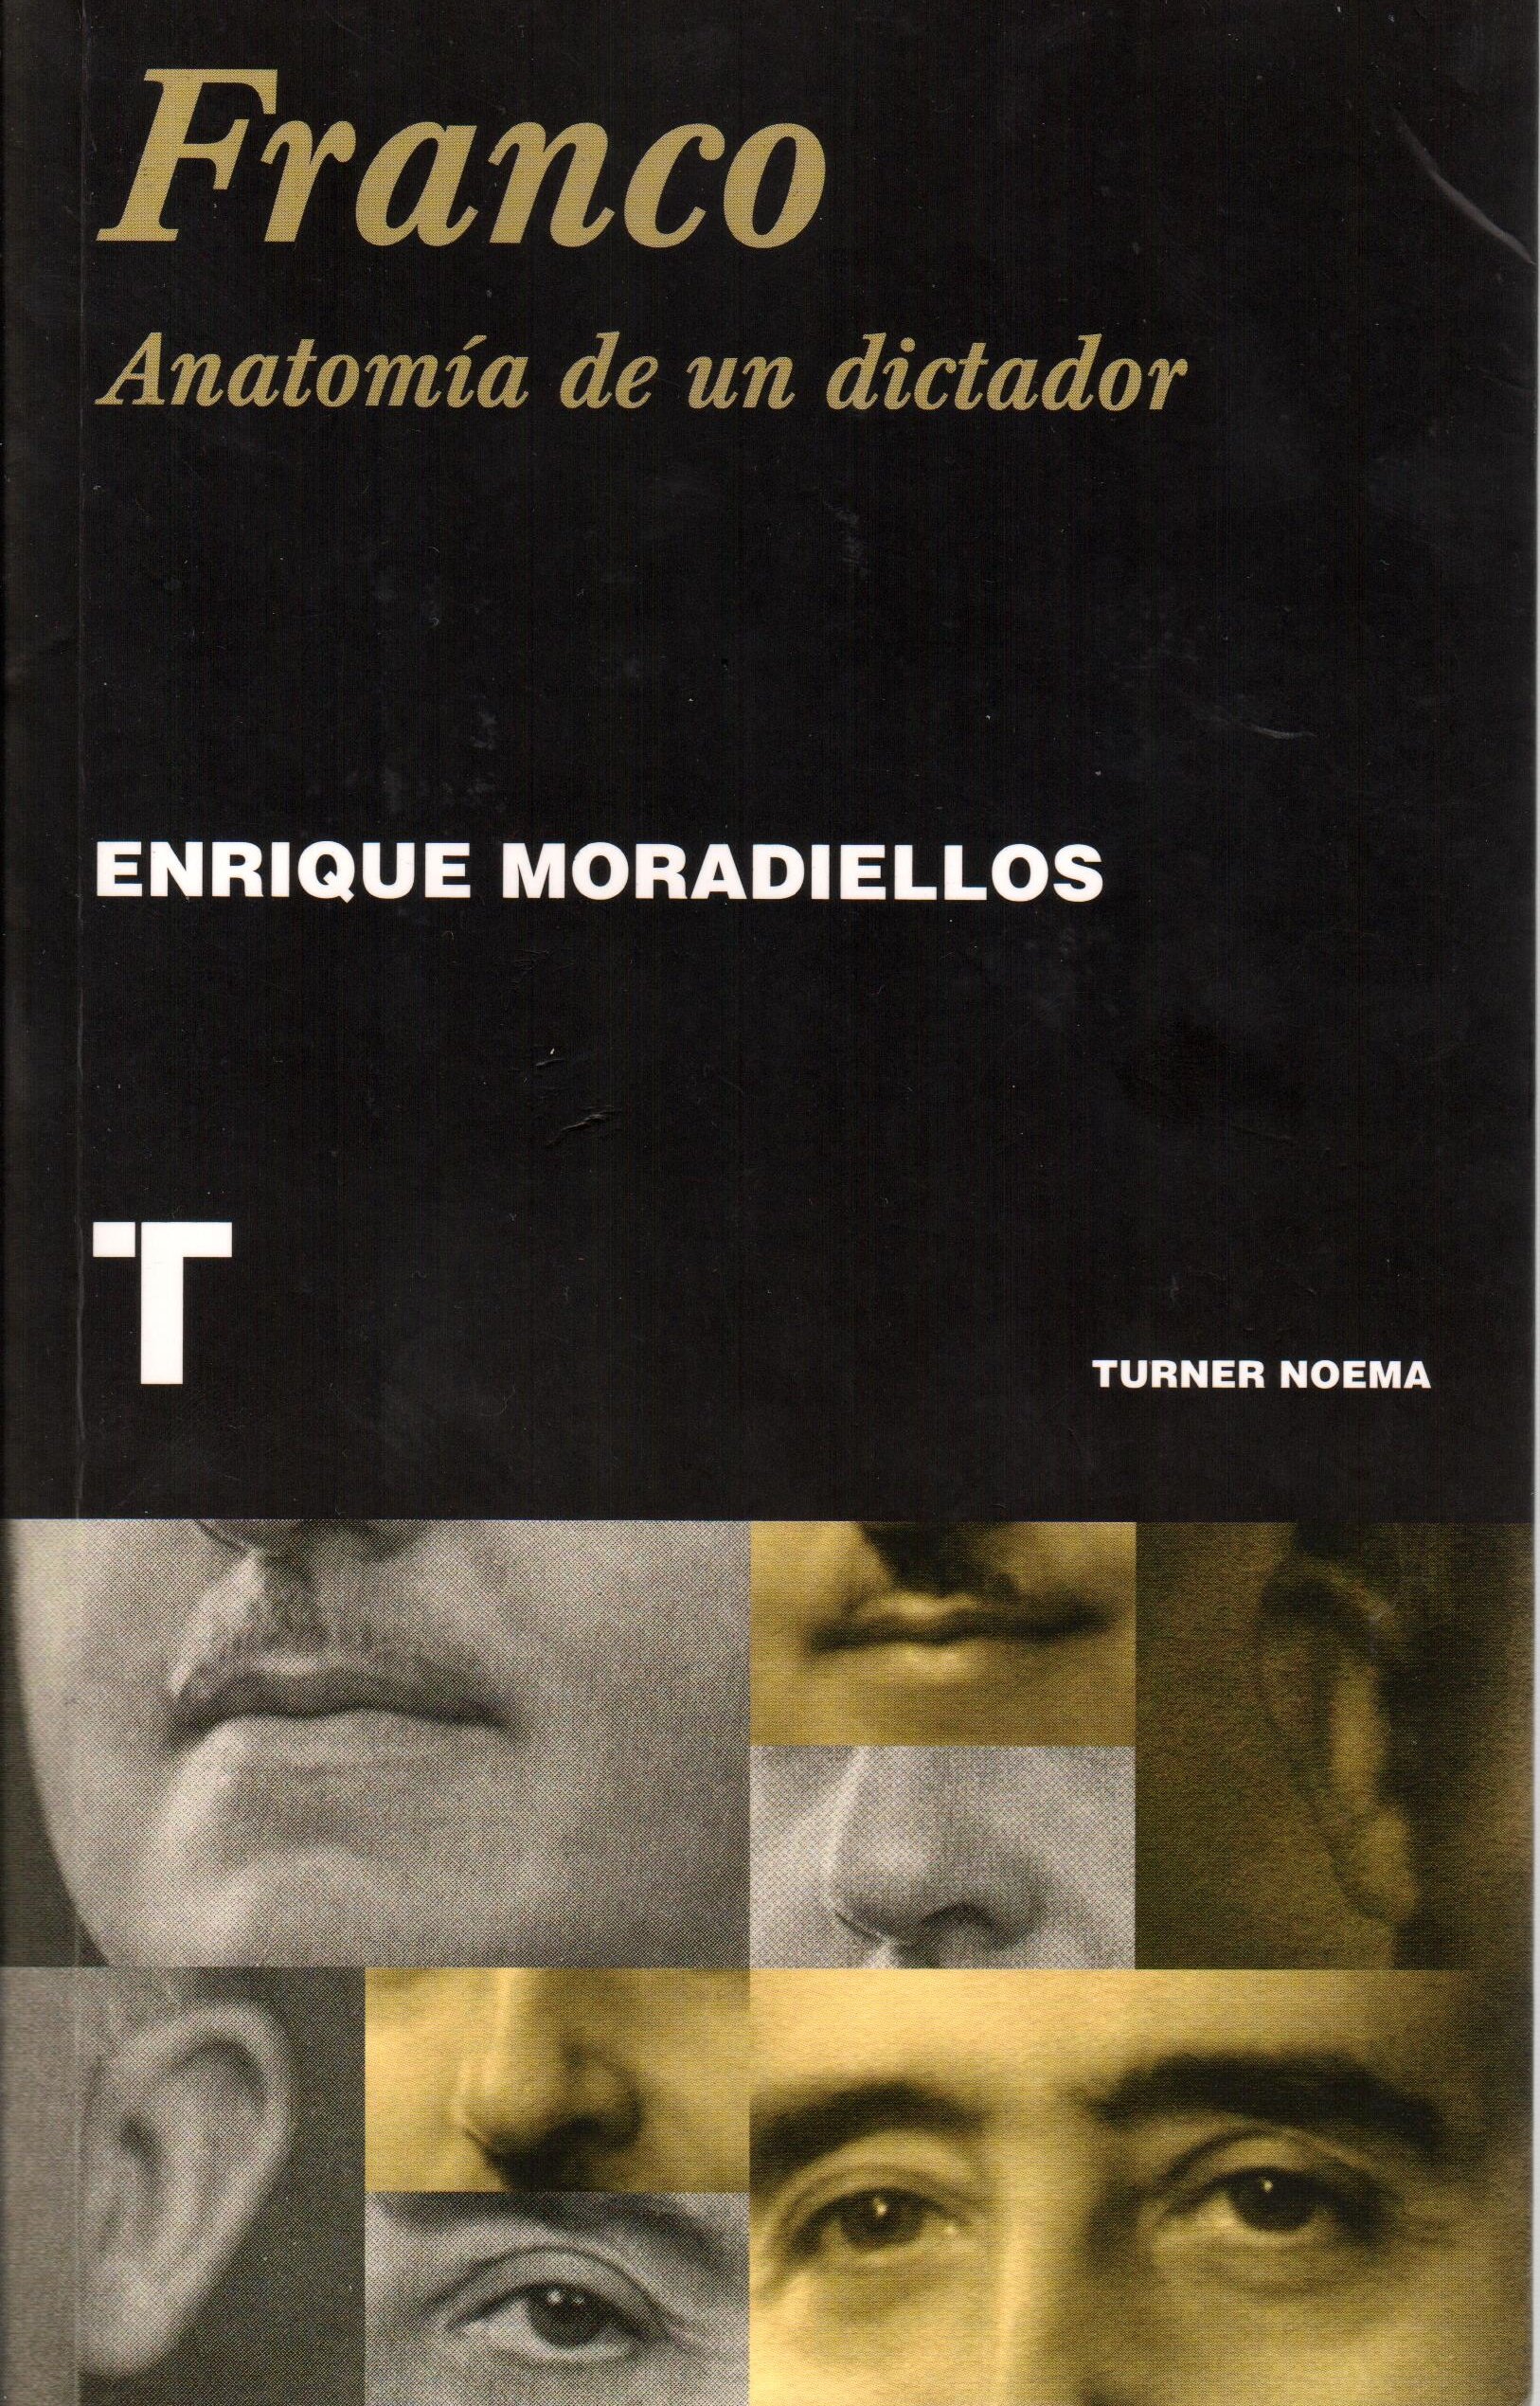 Enrique Moradiellos: "El règim de Franco tenia profunds suports socials"